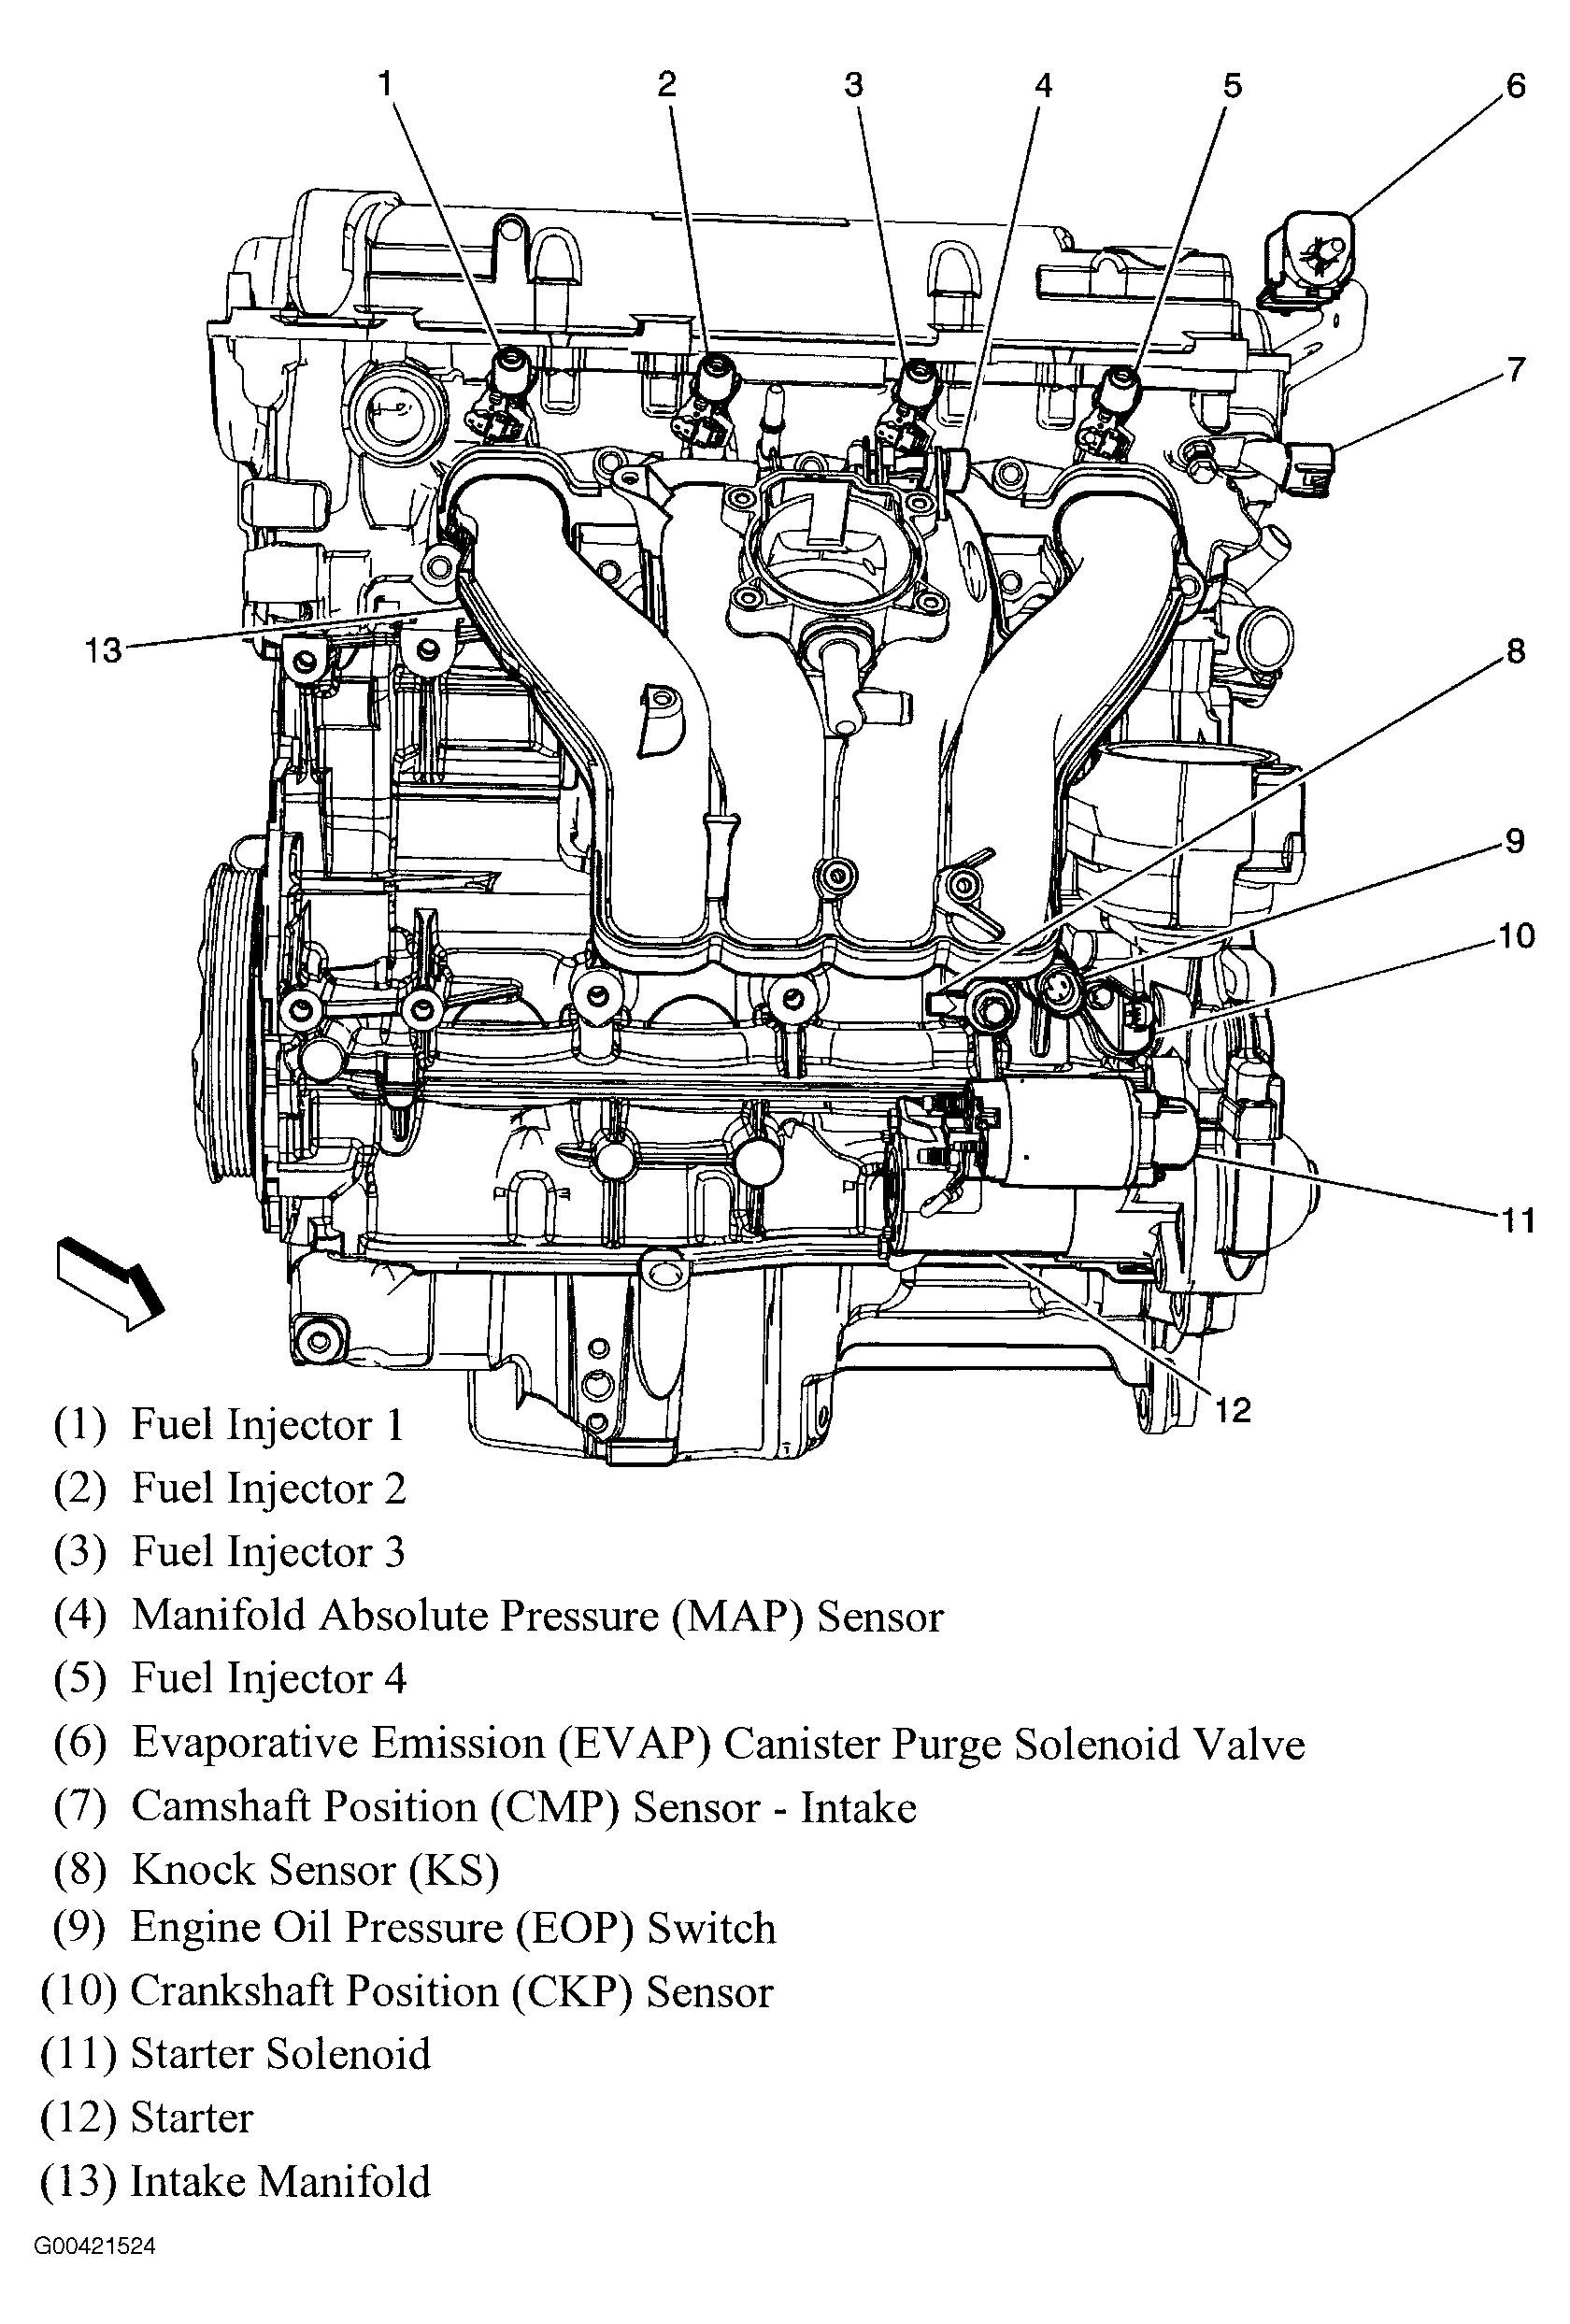 2001 Chevy S10 Engine Diagram Chevy S10 2 Engine Diagram Engine Car Parts and Ponent Diagram Of 2001 Chevy S10 Engine Diagram